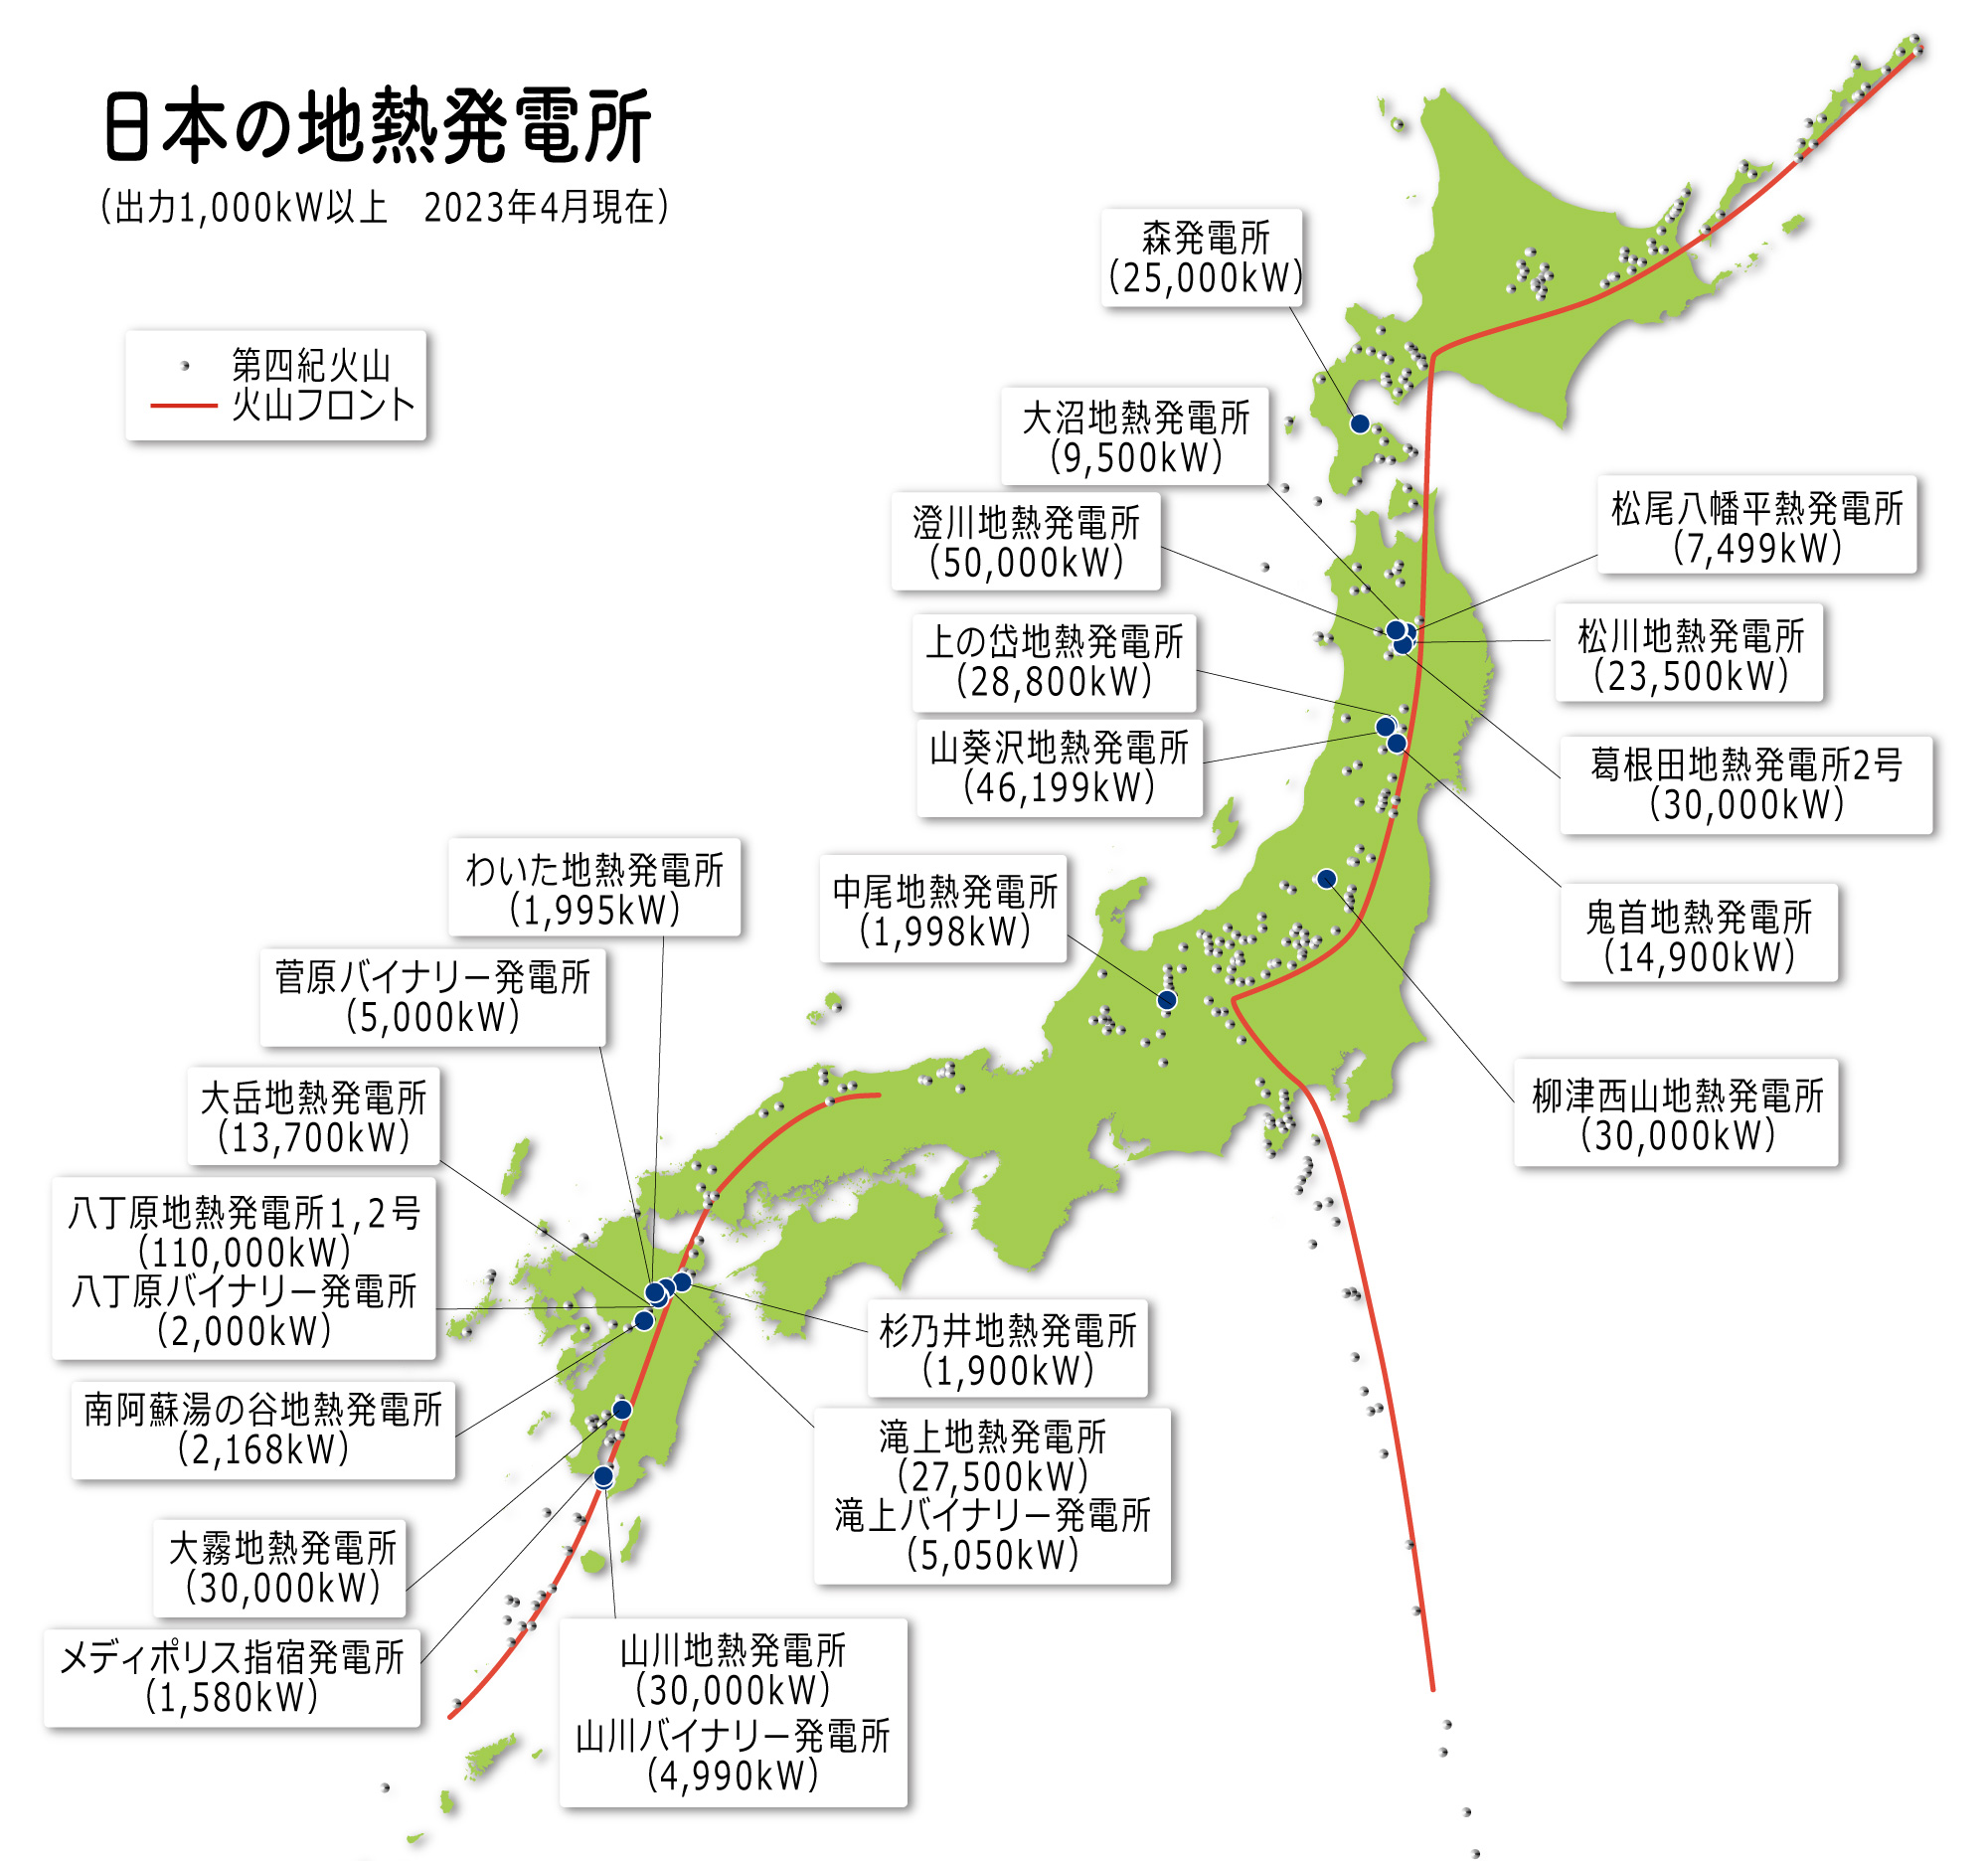 日本の地熱発電所（2007年度運転状況）